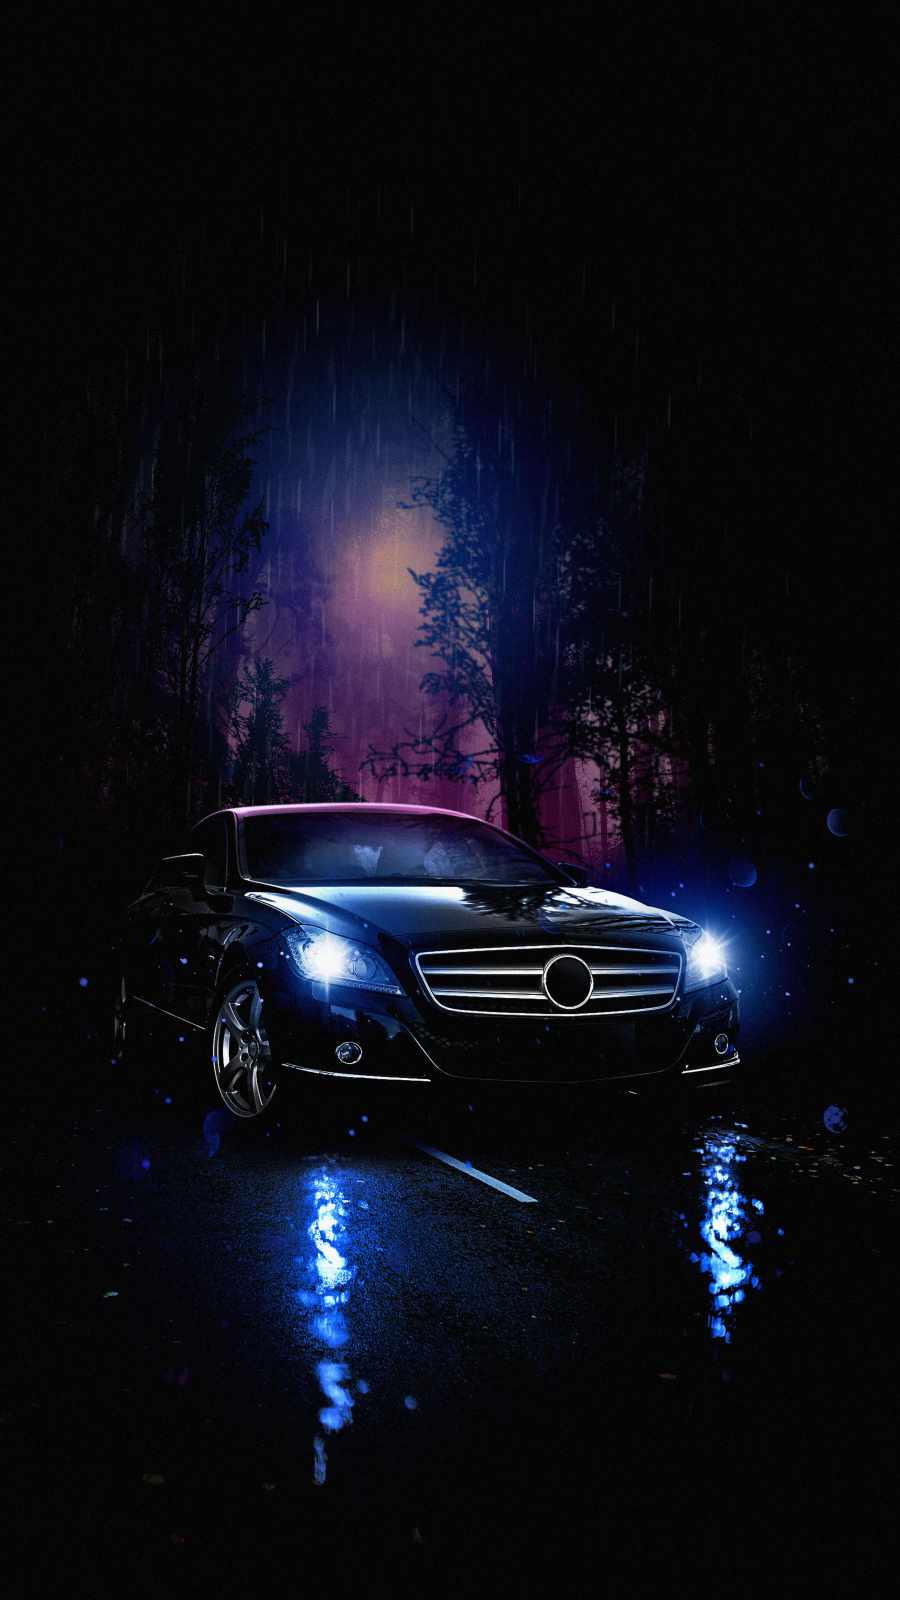 Mercedes Benz Luxury - IPhone Wallpapers : iPhone Wallpapers